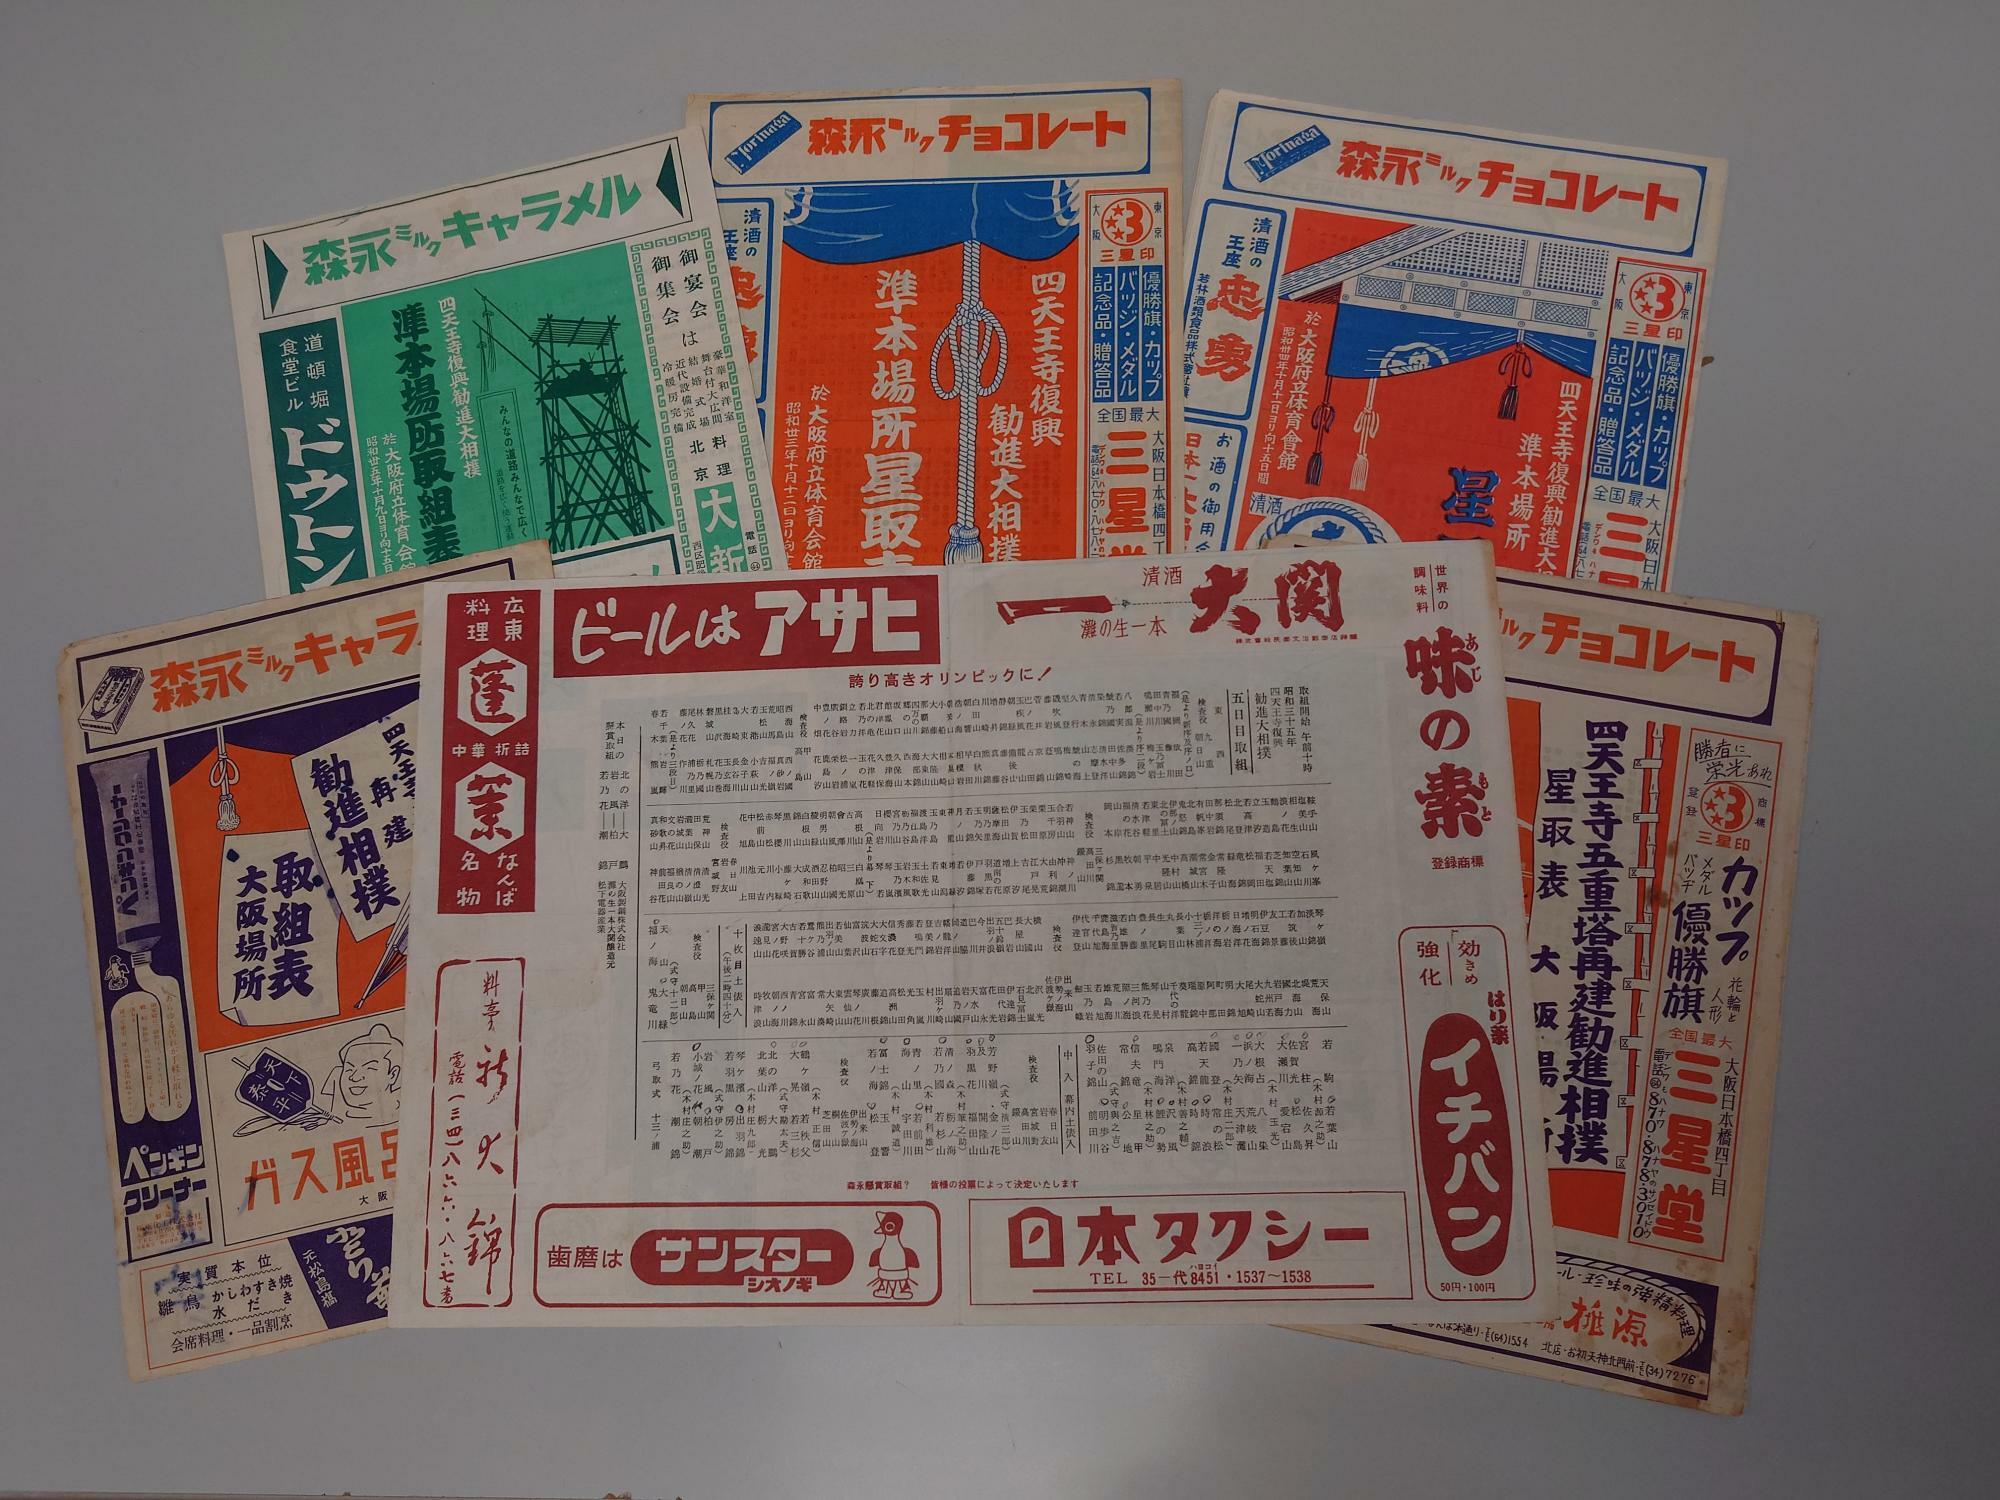 昭和32年から6年間行われた勧進大相撲の取組表。当時は10月に大阪で15日間行われ、本場所のように表彰などもあったと書かれているから驚きだ